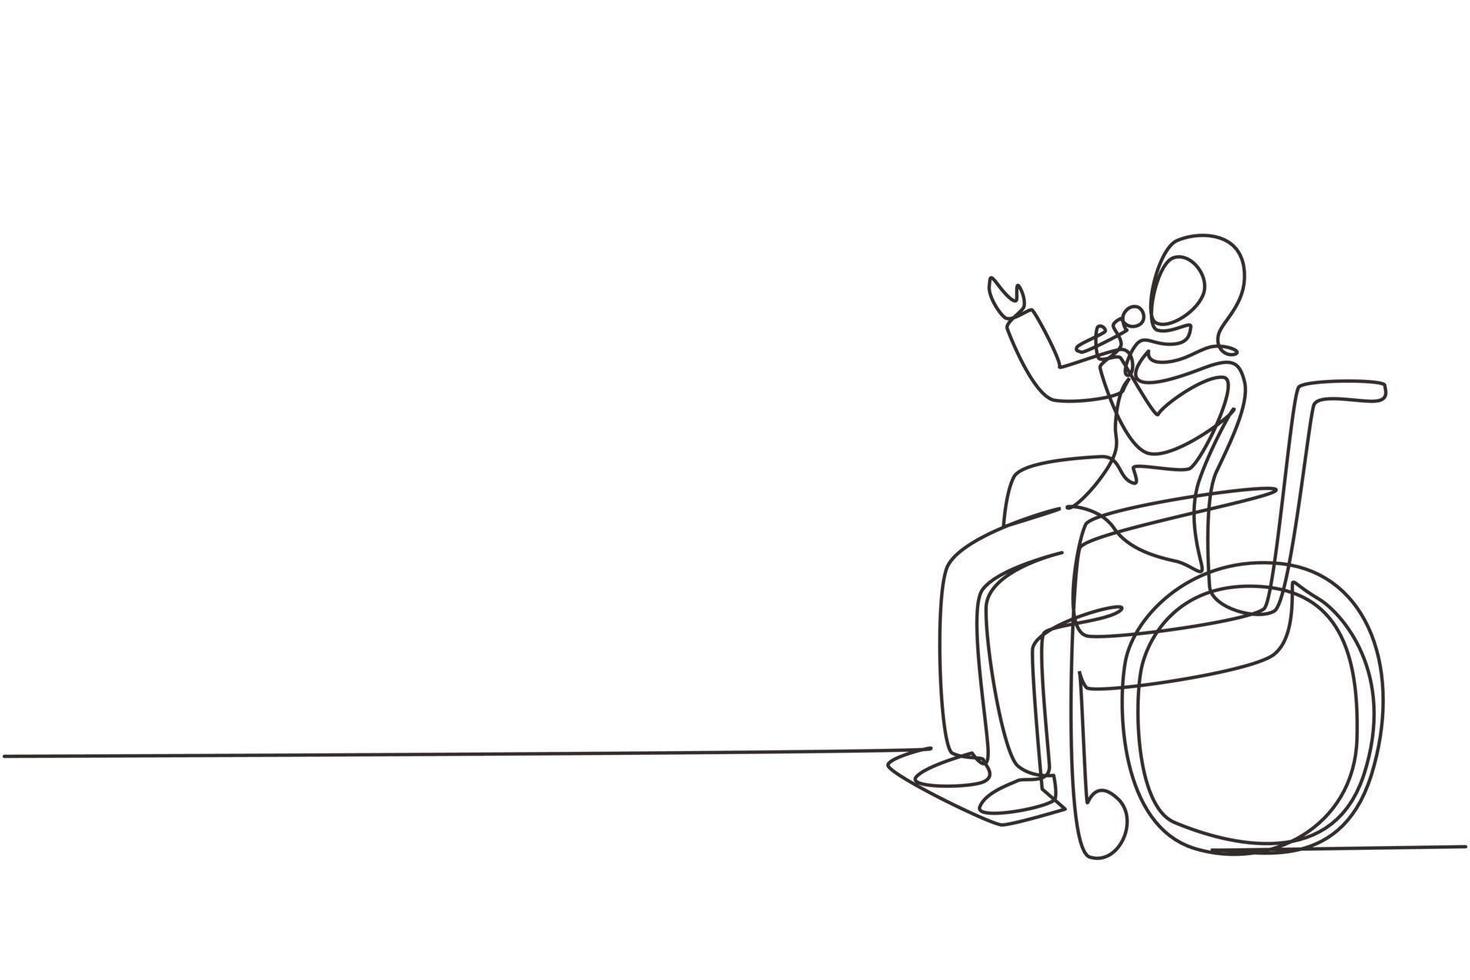 une seule ligne continue dessinant une personne handicapée profitant de la vie. femme arabe assise en fauteuil roulant chantant au karaoké. passer du temps dans un lieu de loisirs. une ligne dessiner illustration vectorielle de conception graphique vecteur